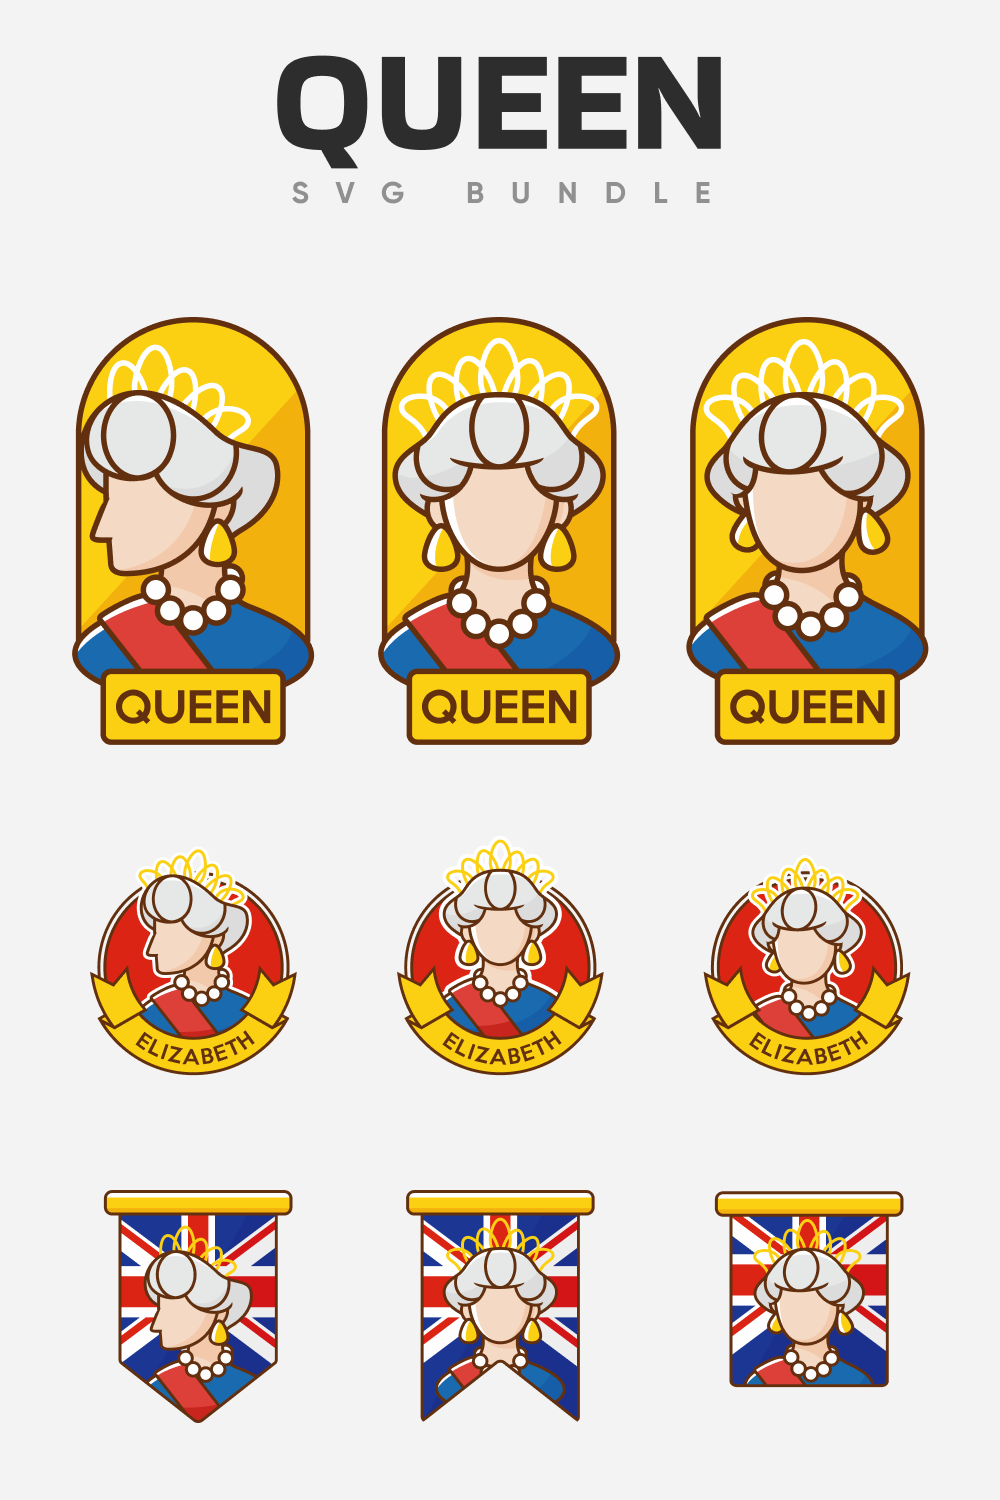 Queen SVG bundle.